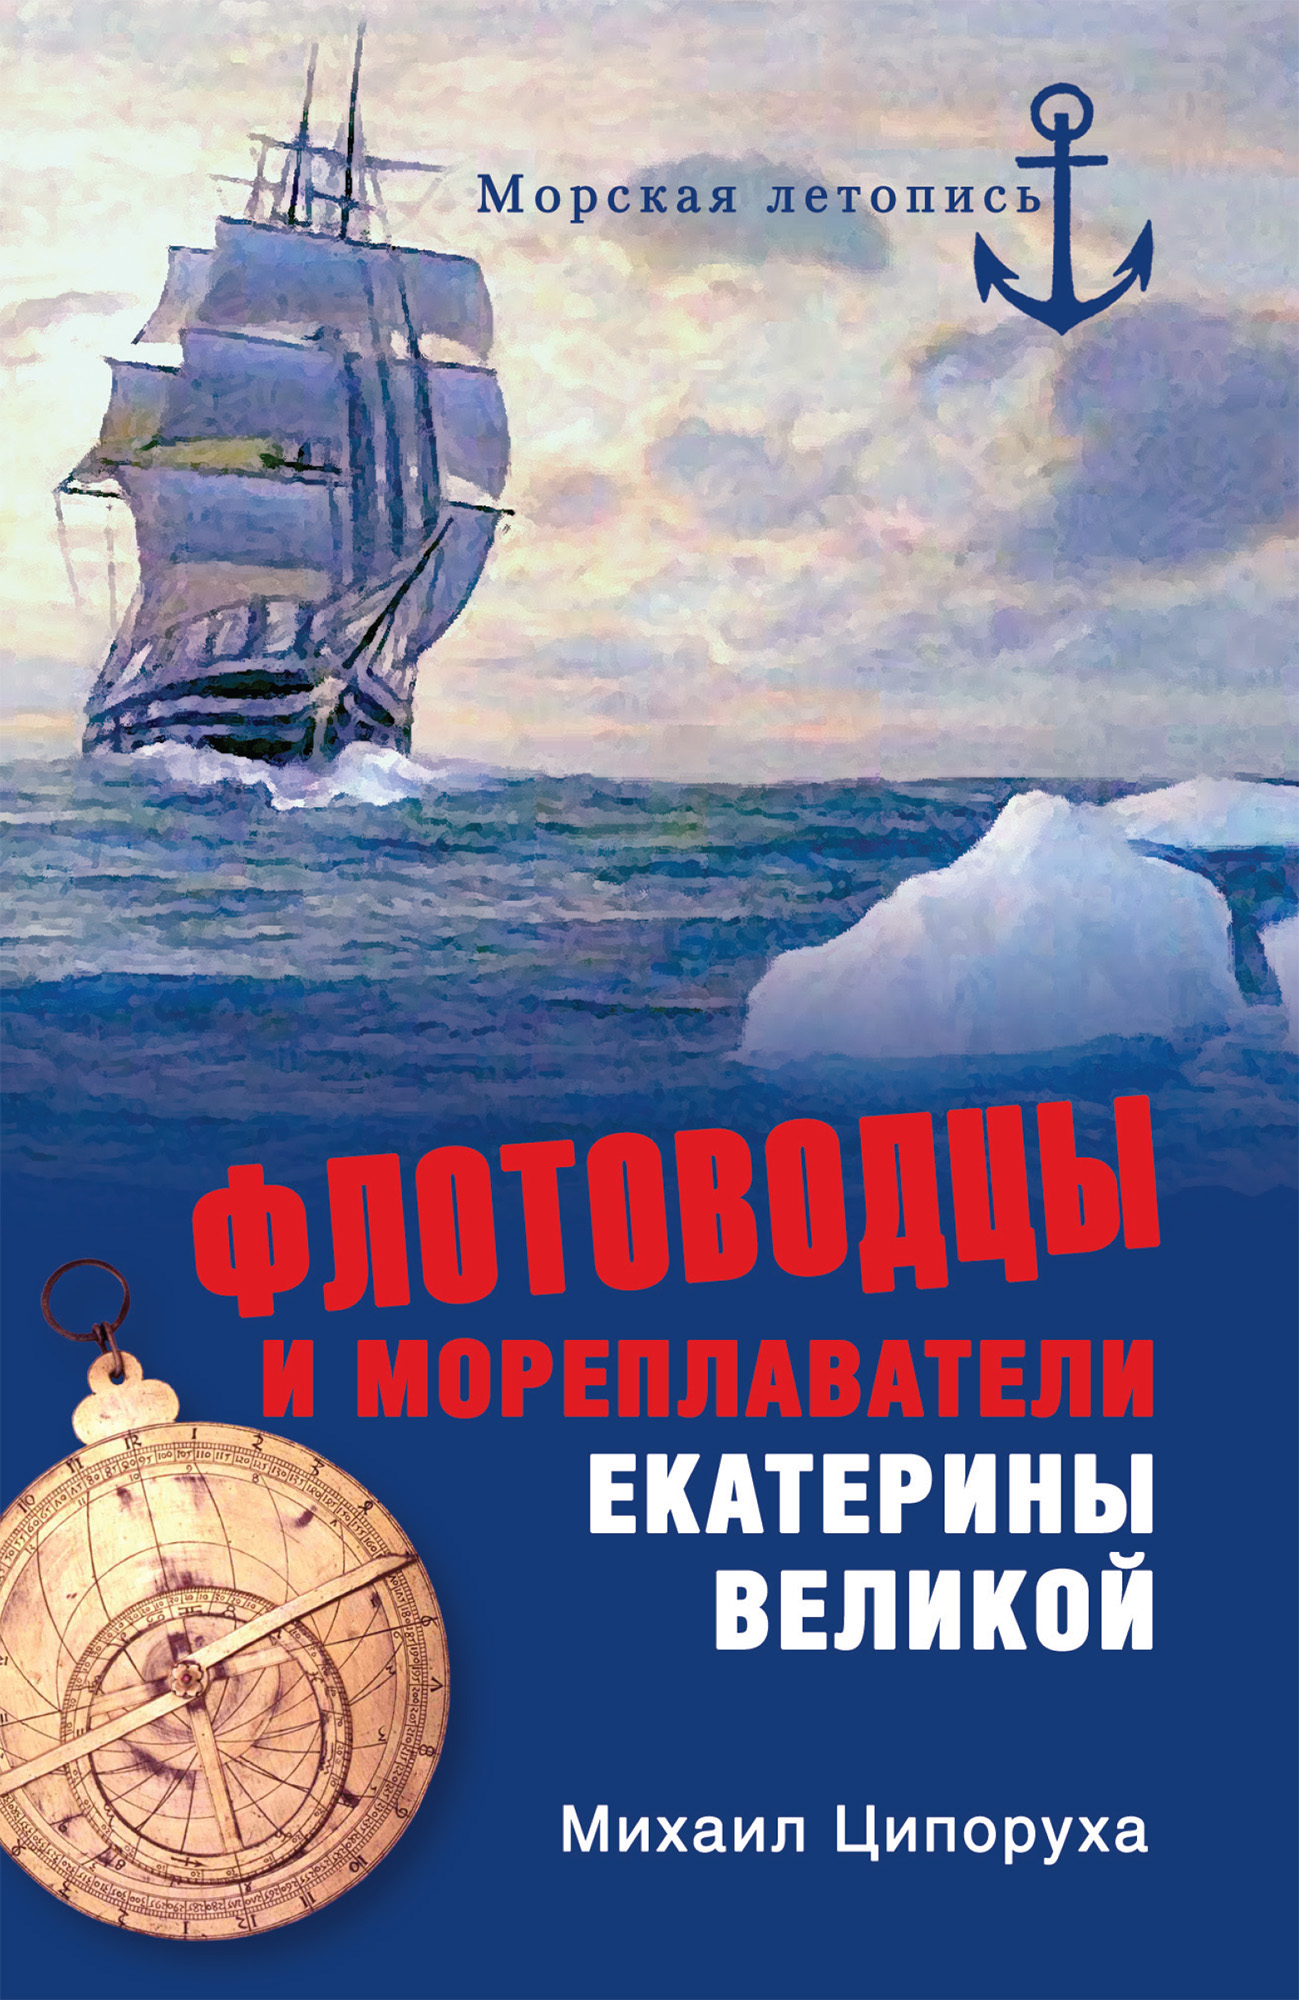 Флотоводцы и мореплаватели Екатерины Великой